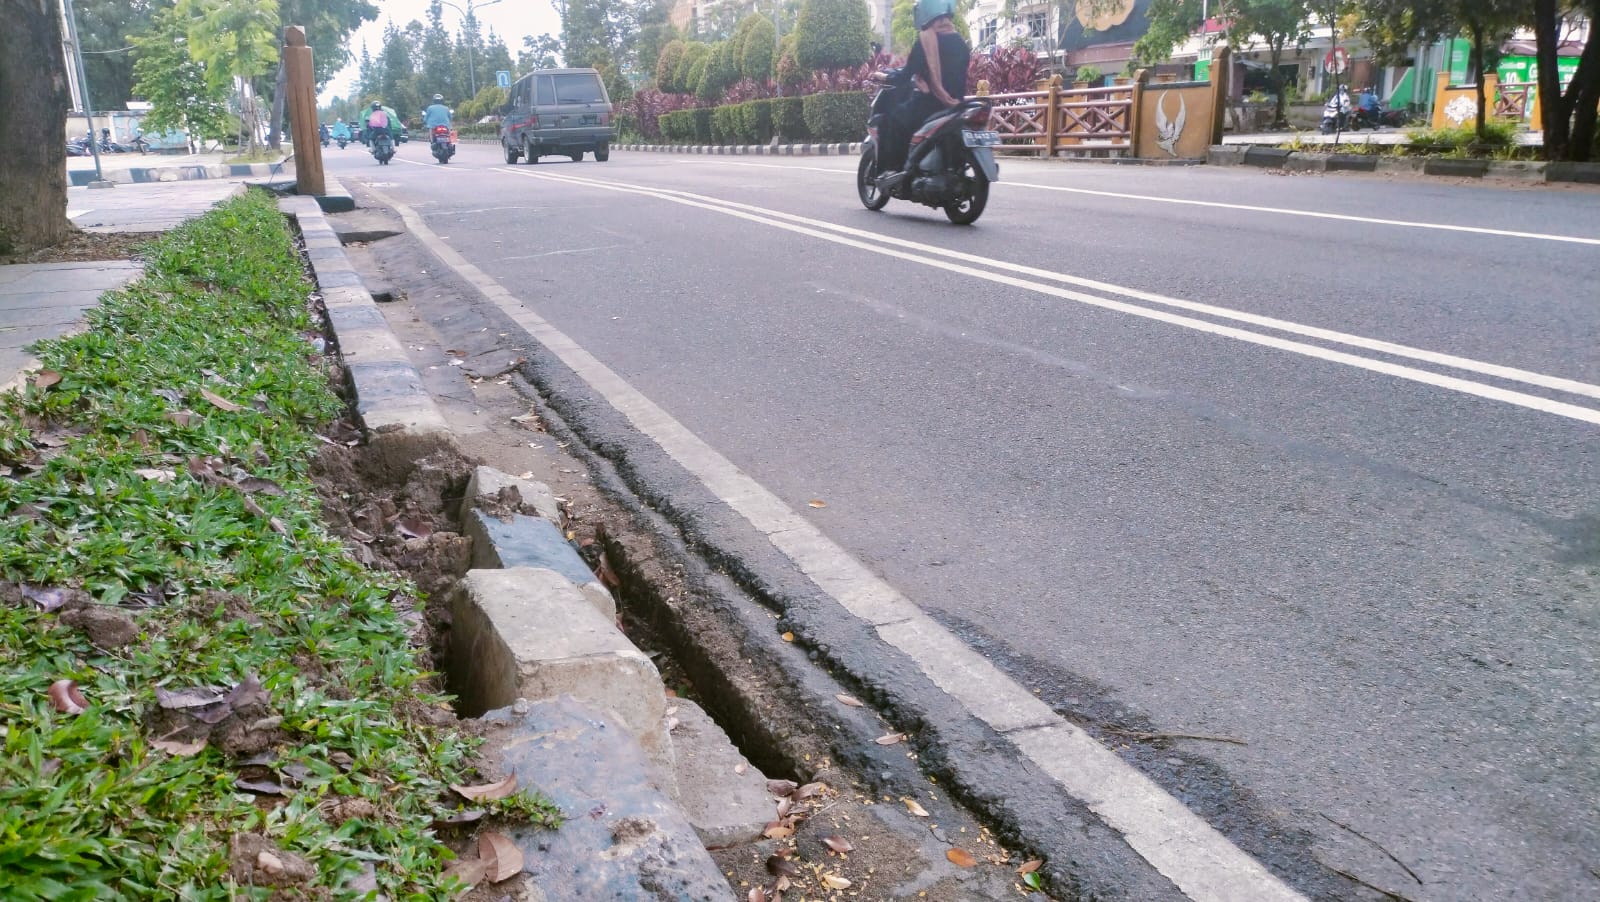 Trotoar di sejumlah titik di jalan Kota Pontianak terlihat sudah rusak dan pecah-pecah. (Foto: Jauhari)